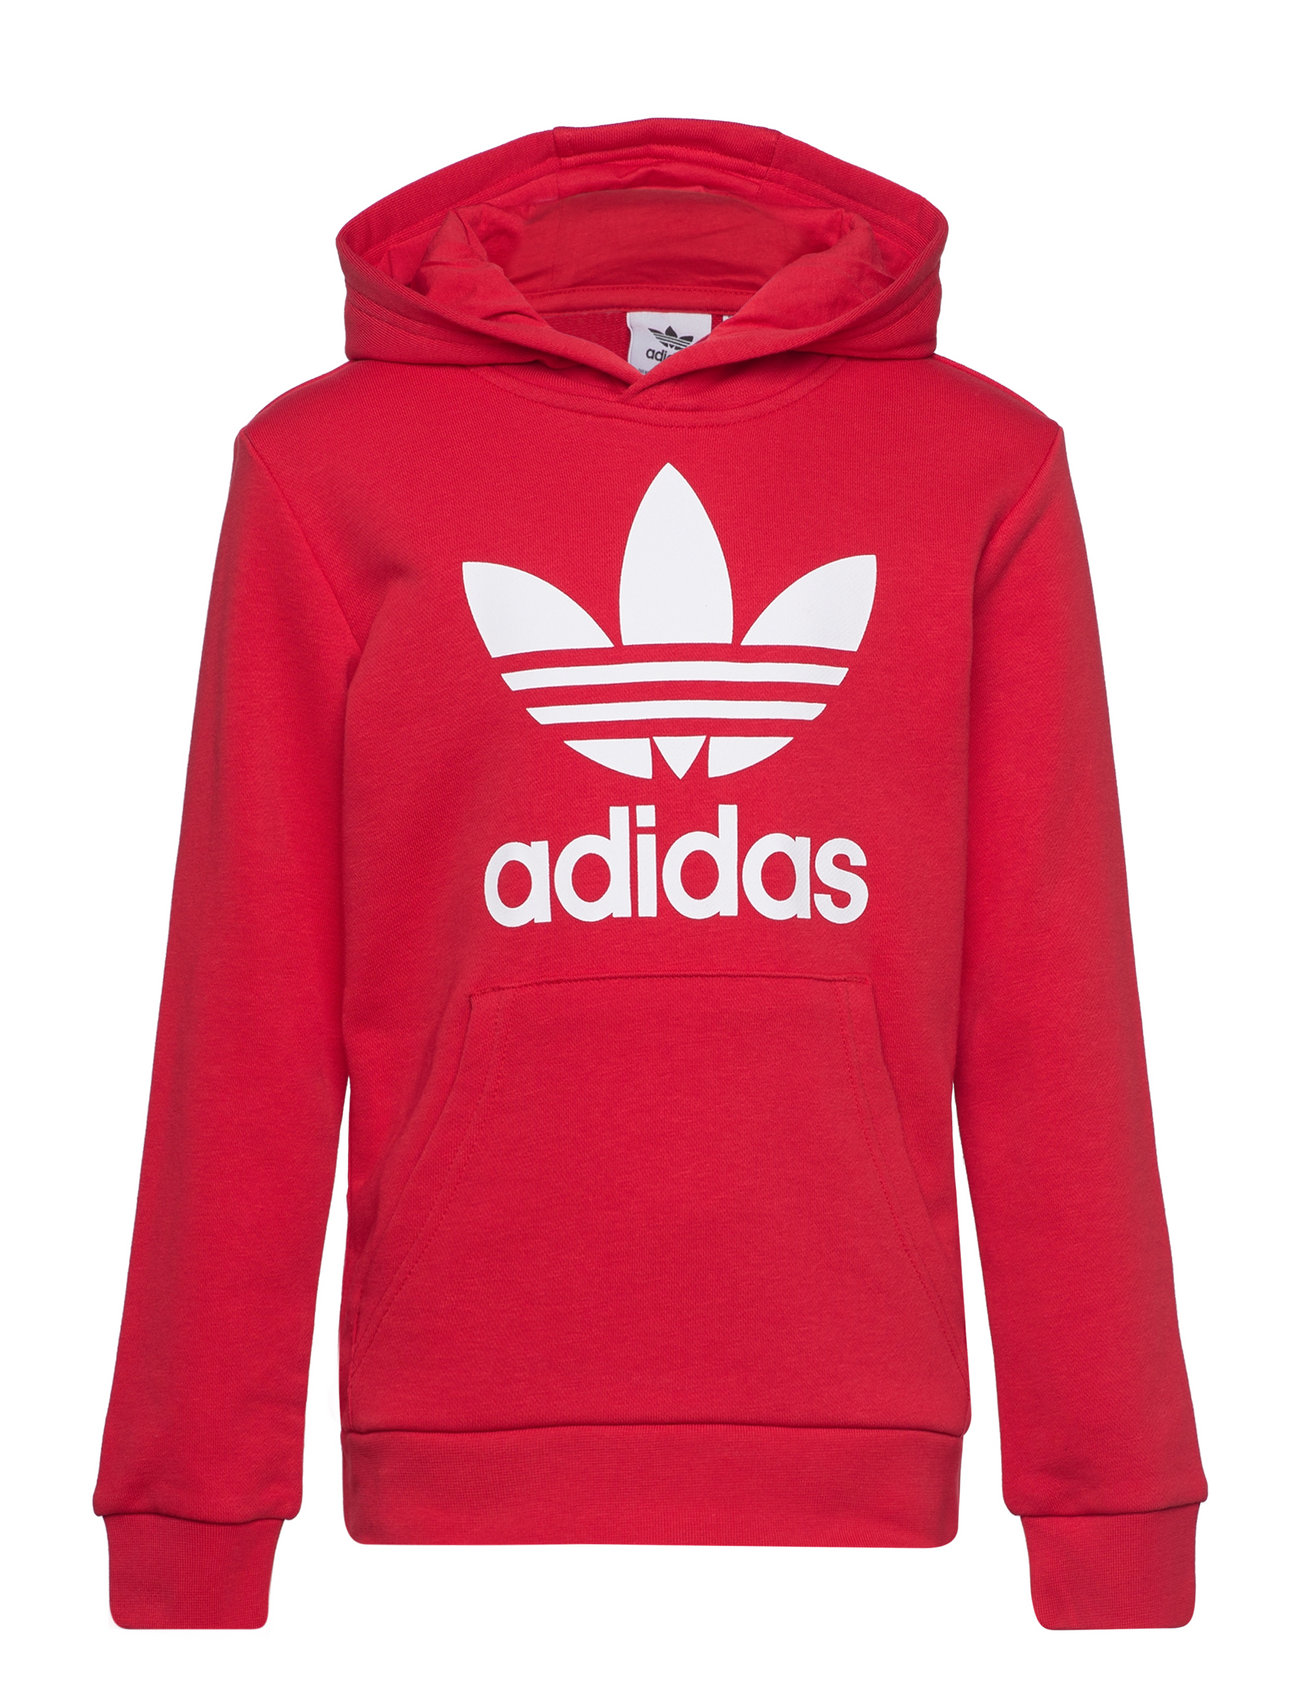 Trefoil Hoodie Sport Sweat-shirts & Hoodies Hoodies Red Adidas Originals